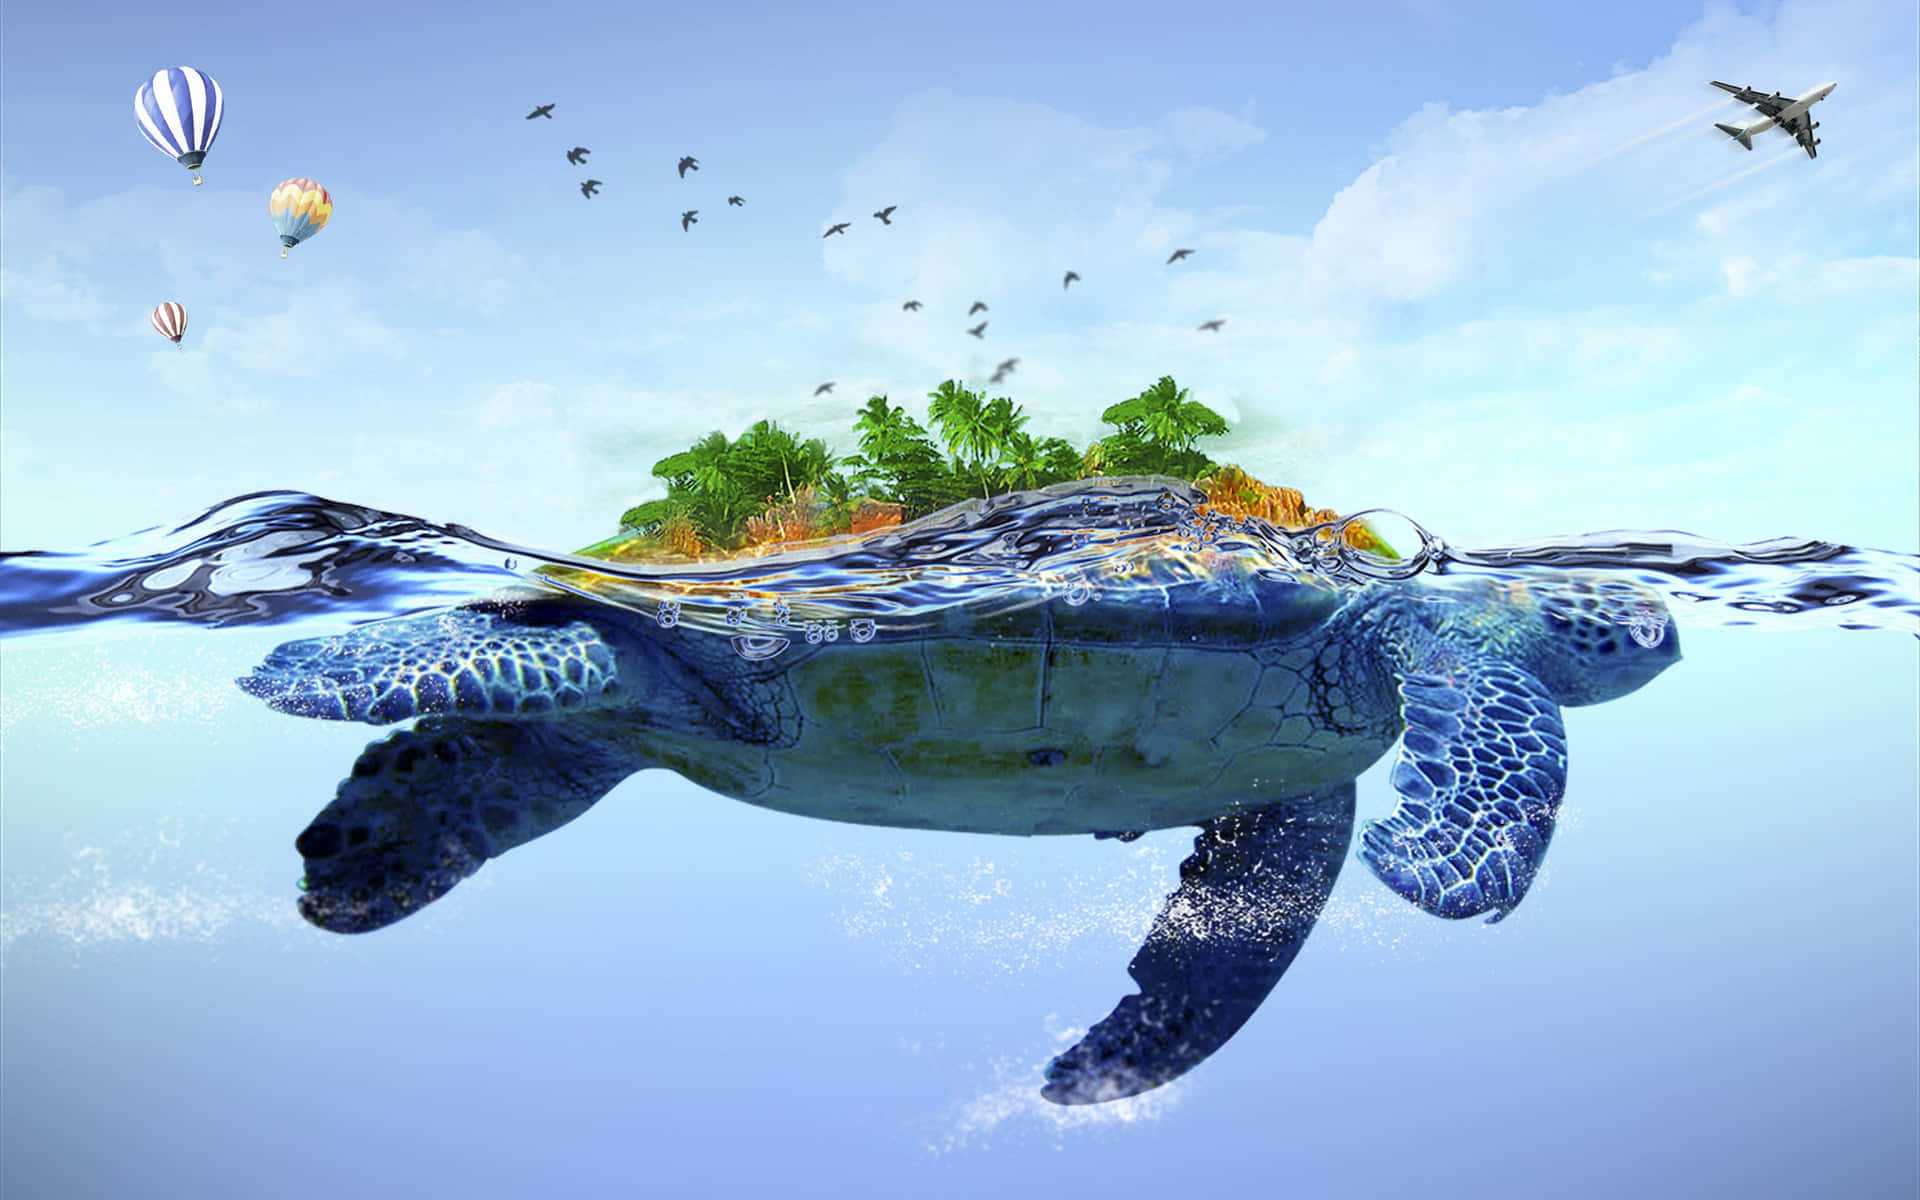 Eineschildkröte, Die Im Ozean Schwimmt, Mit Einem Baum Und Luftballons.